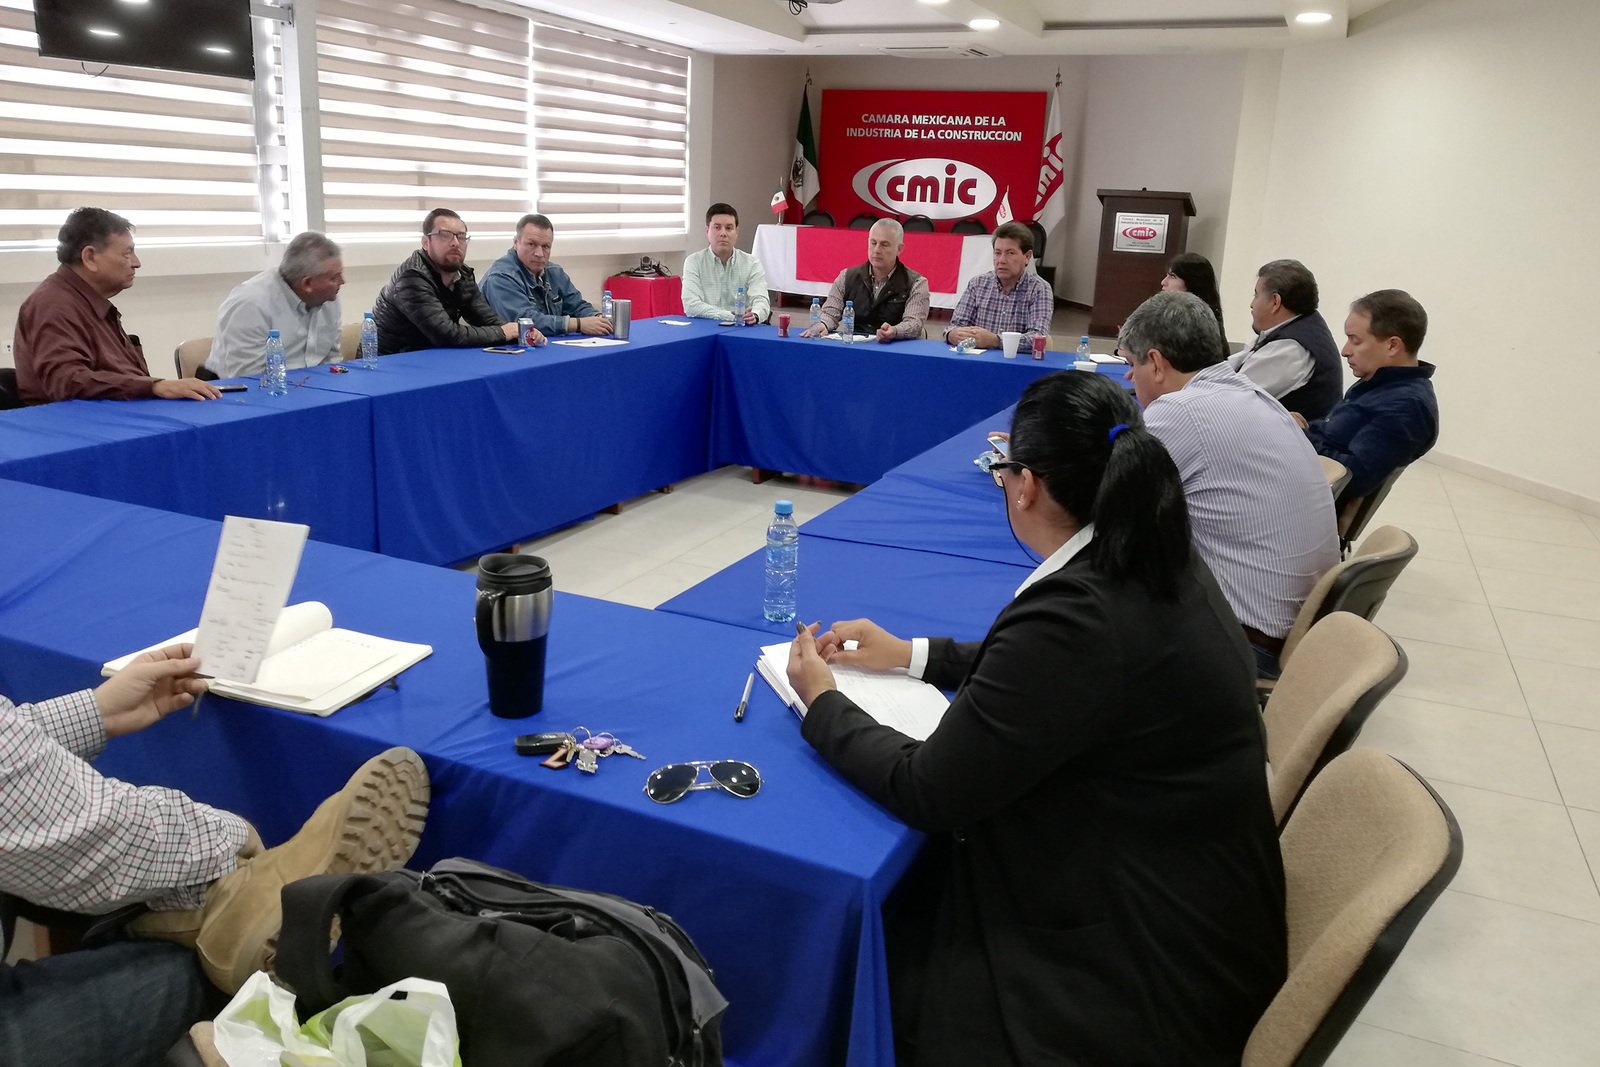 Los constructores se reunieron con representantes de la Junta Local de Conciliación y Arbitraje para instalar módulo de atención. (VIRGINIA HERNÁNDEZ)